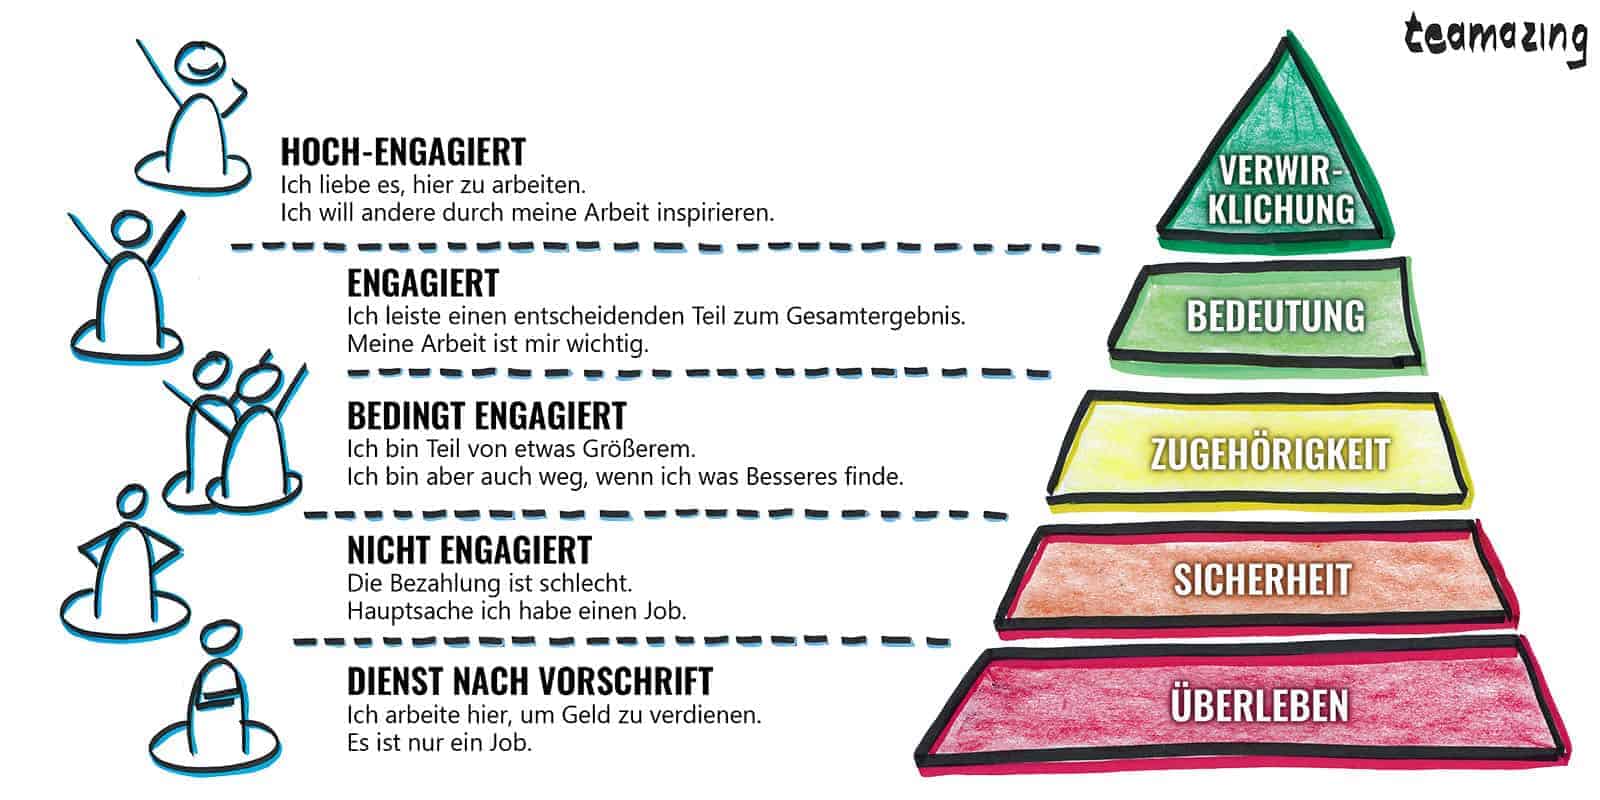 Maslows Bedürfnispyramide für Mitarbeiterengagement für Führungskräfte